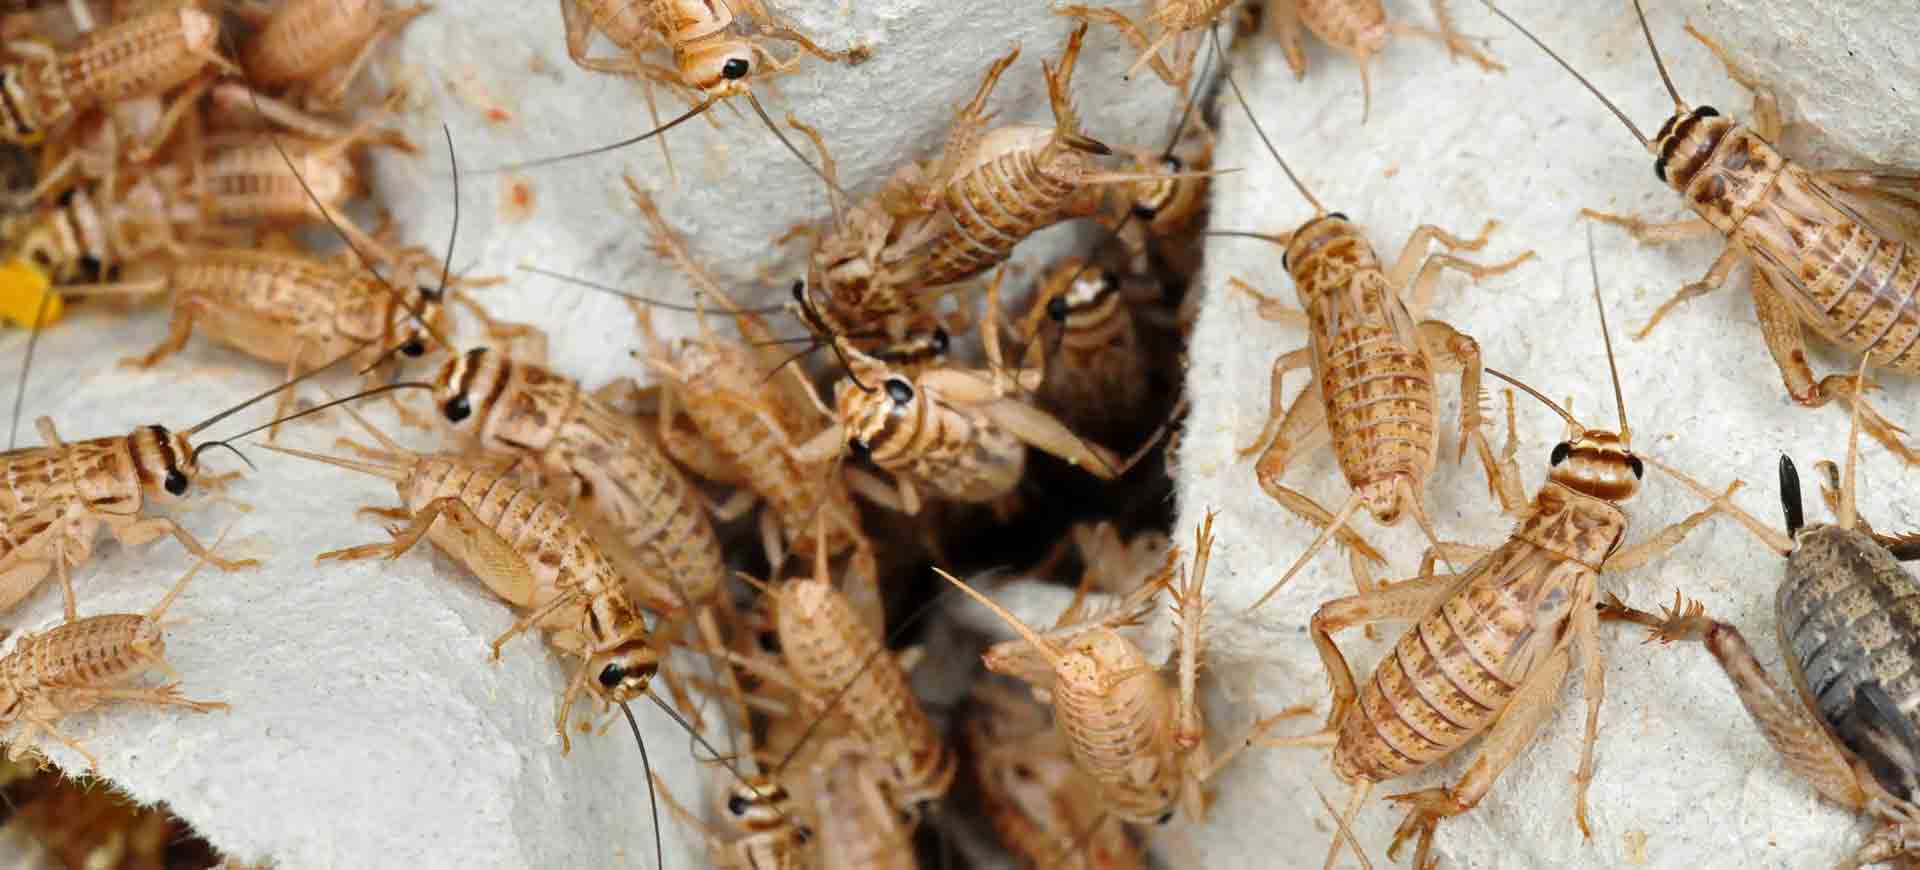 cricket pest control alpine